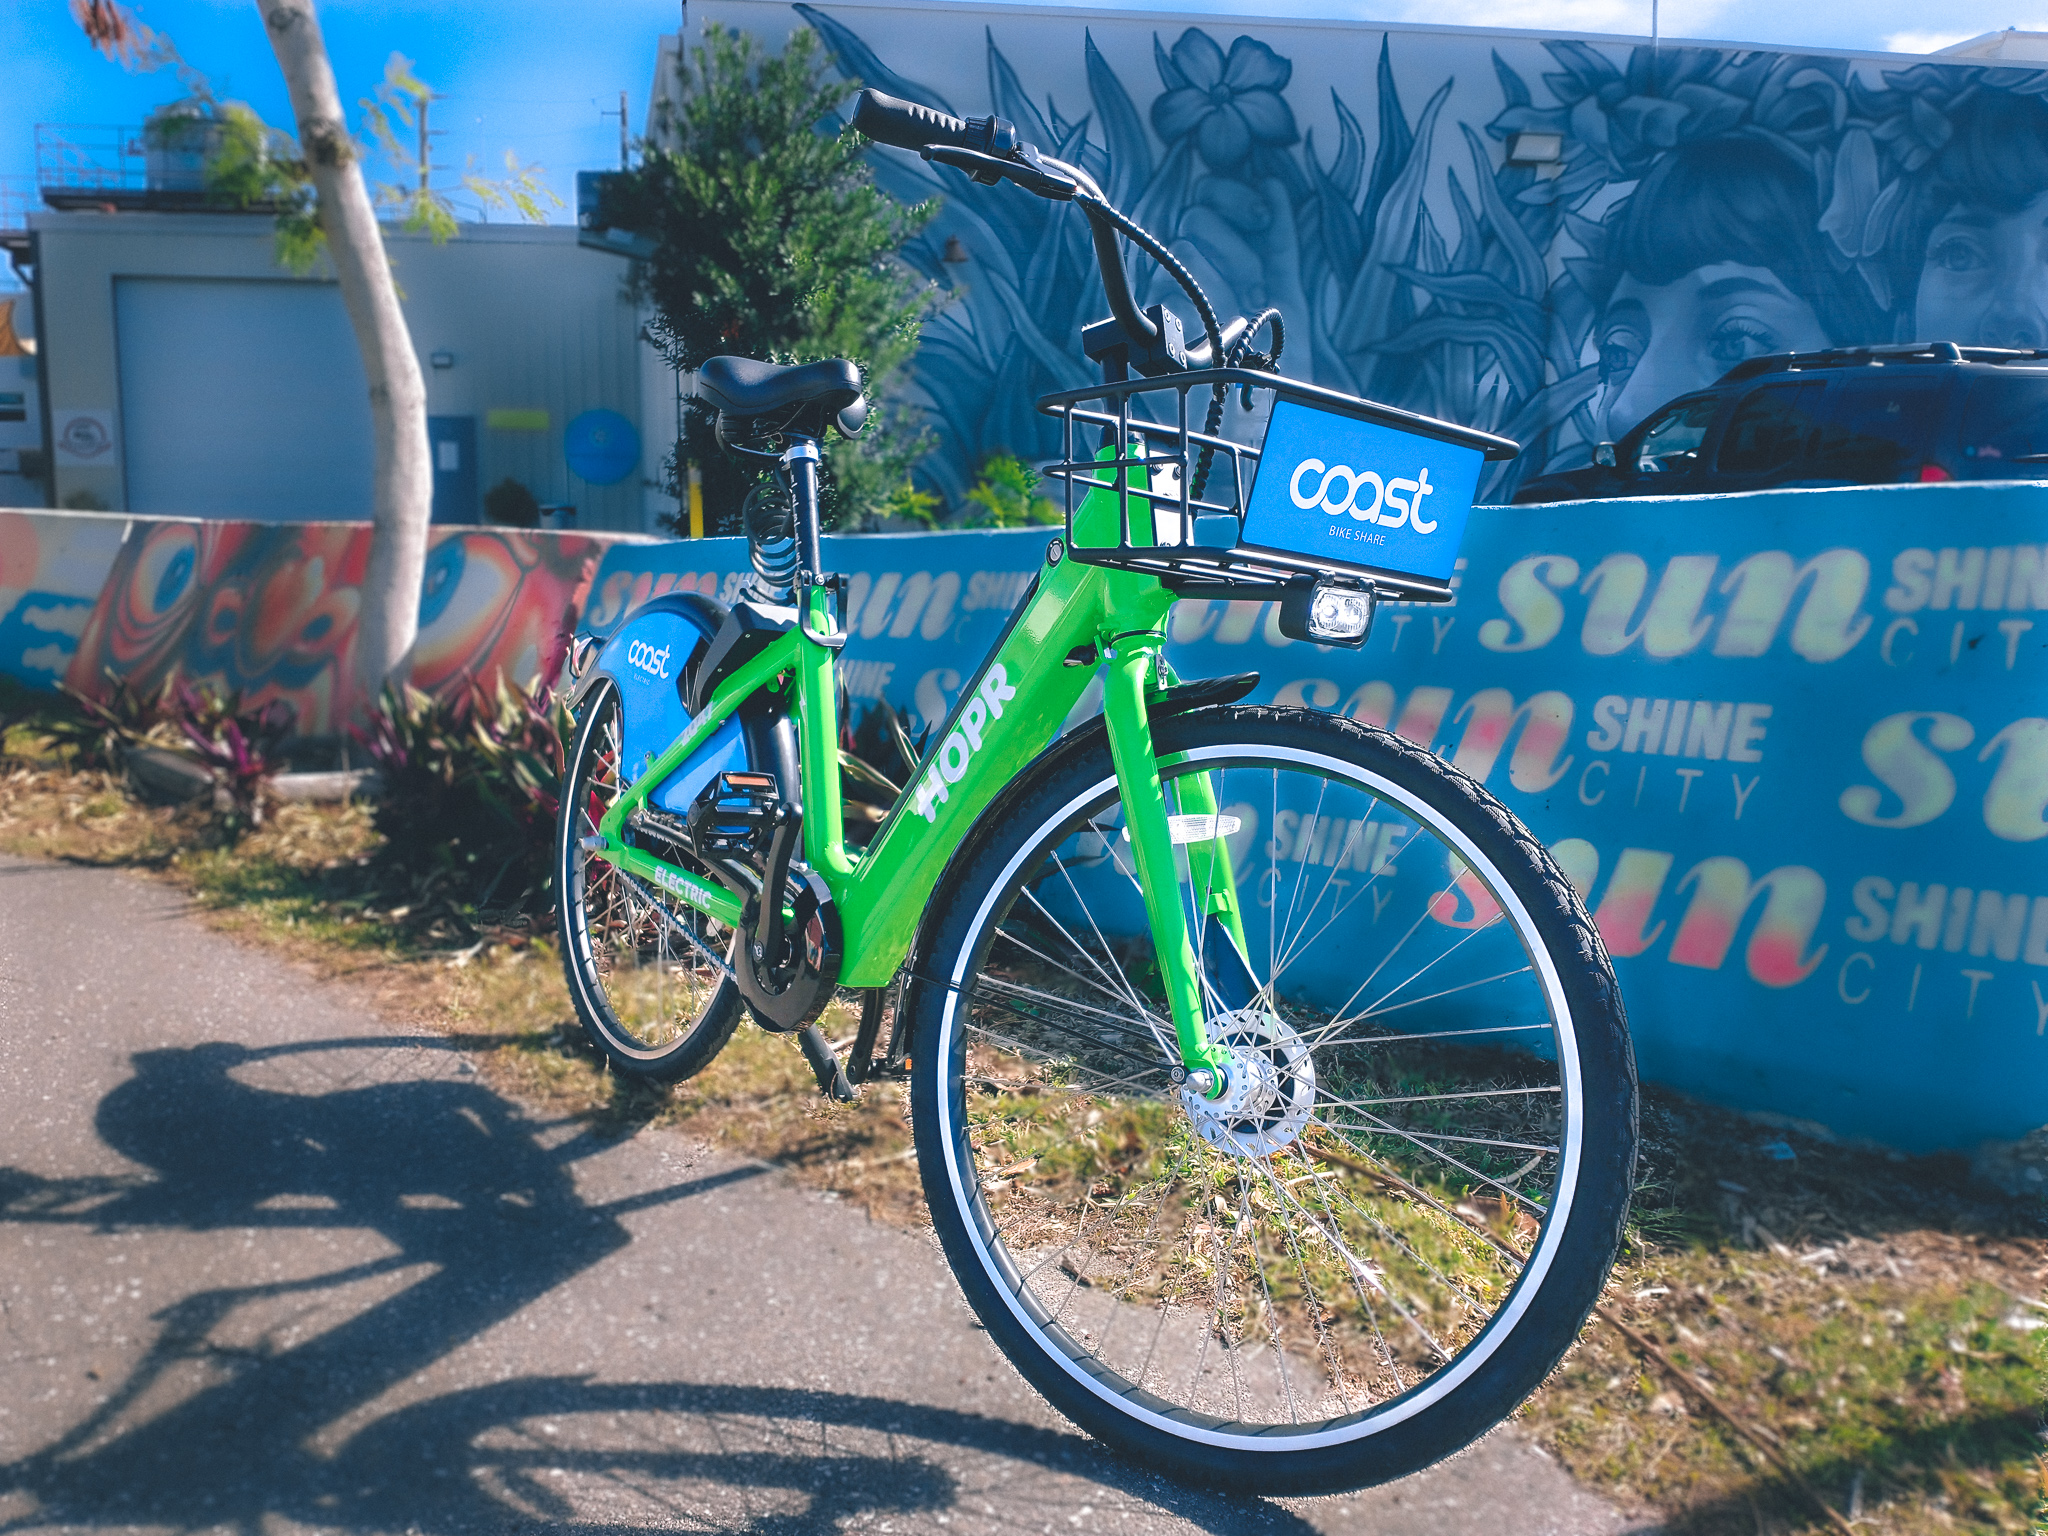 HOPR electric bike green Coast bike share